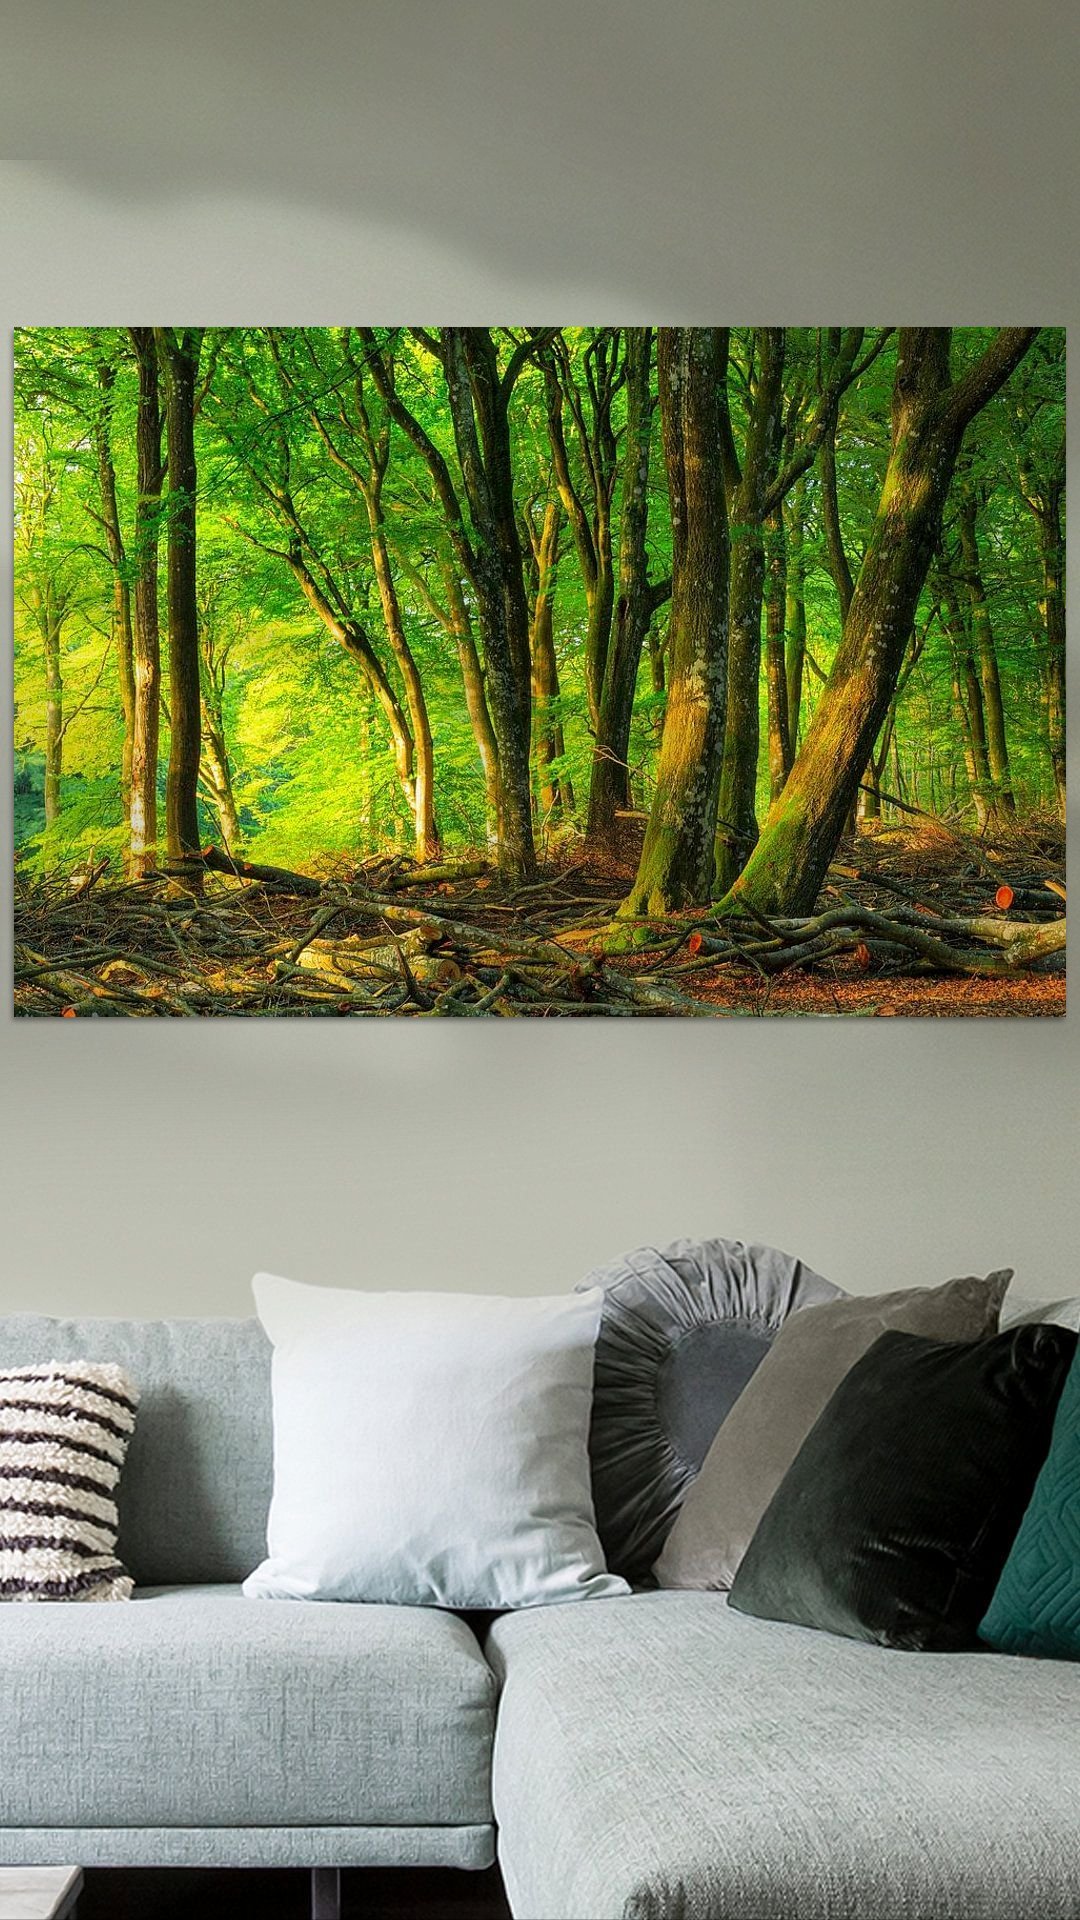 Werk aan de Muur-1006779-Rold Skov Denemarken-Marcel Kerdijk-1080x1920-Living room groene wanden-instagramReel.jpg